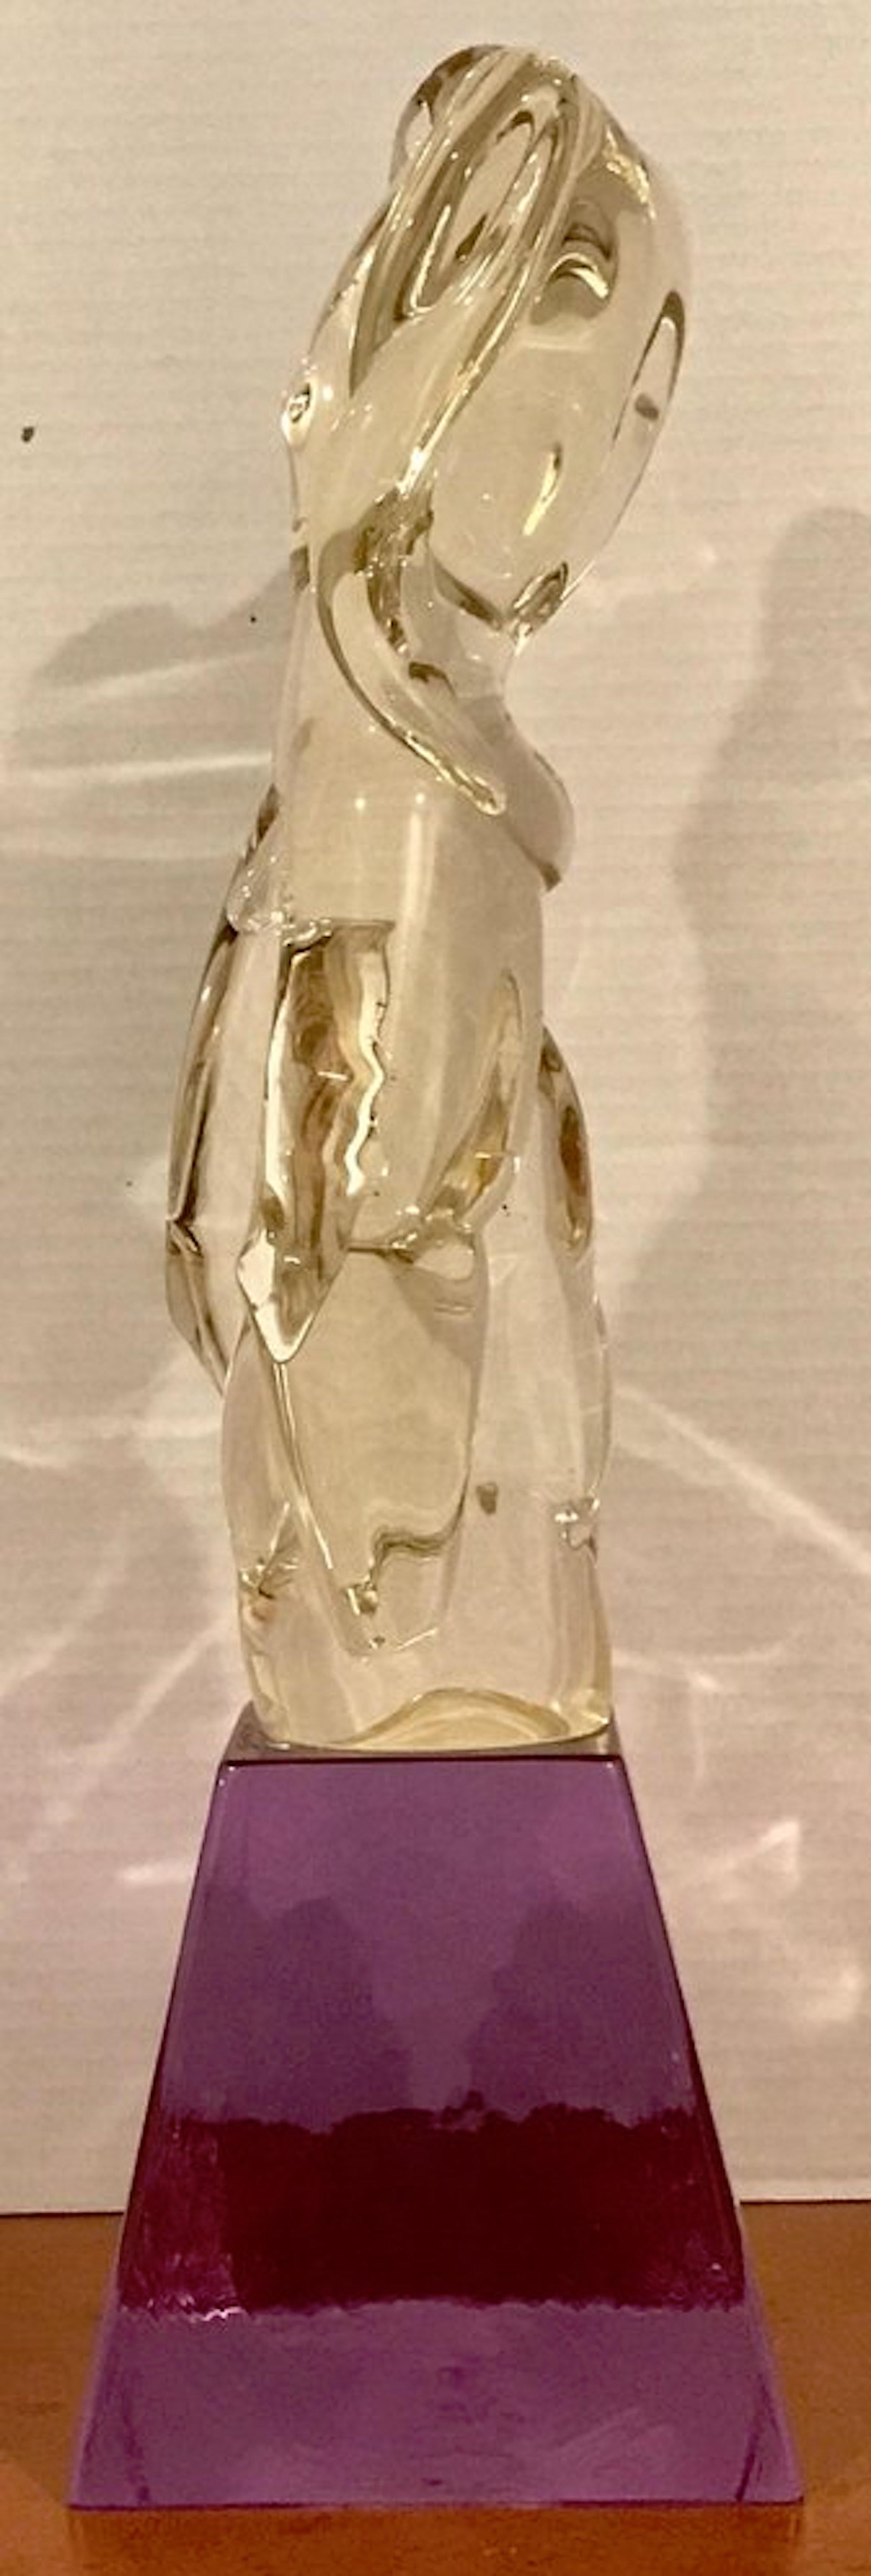 Male Nude Murano Glass Sculpture by Pino Signoretto For Sale 2